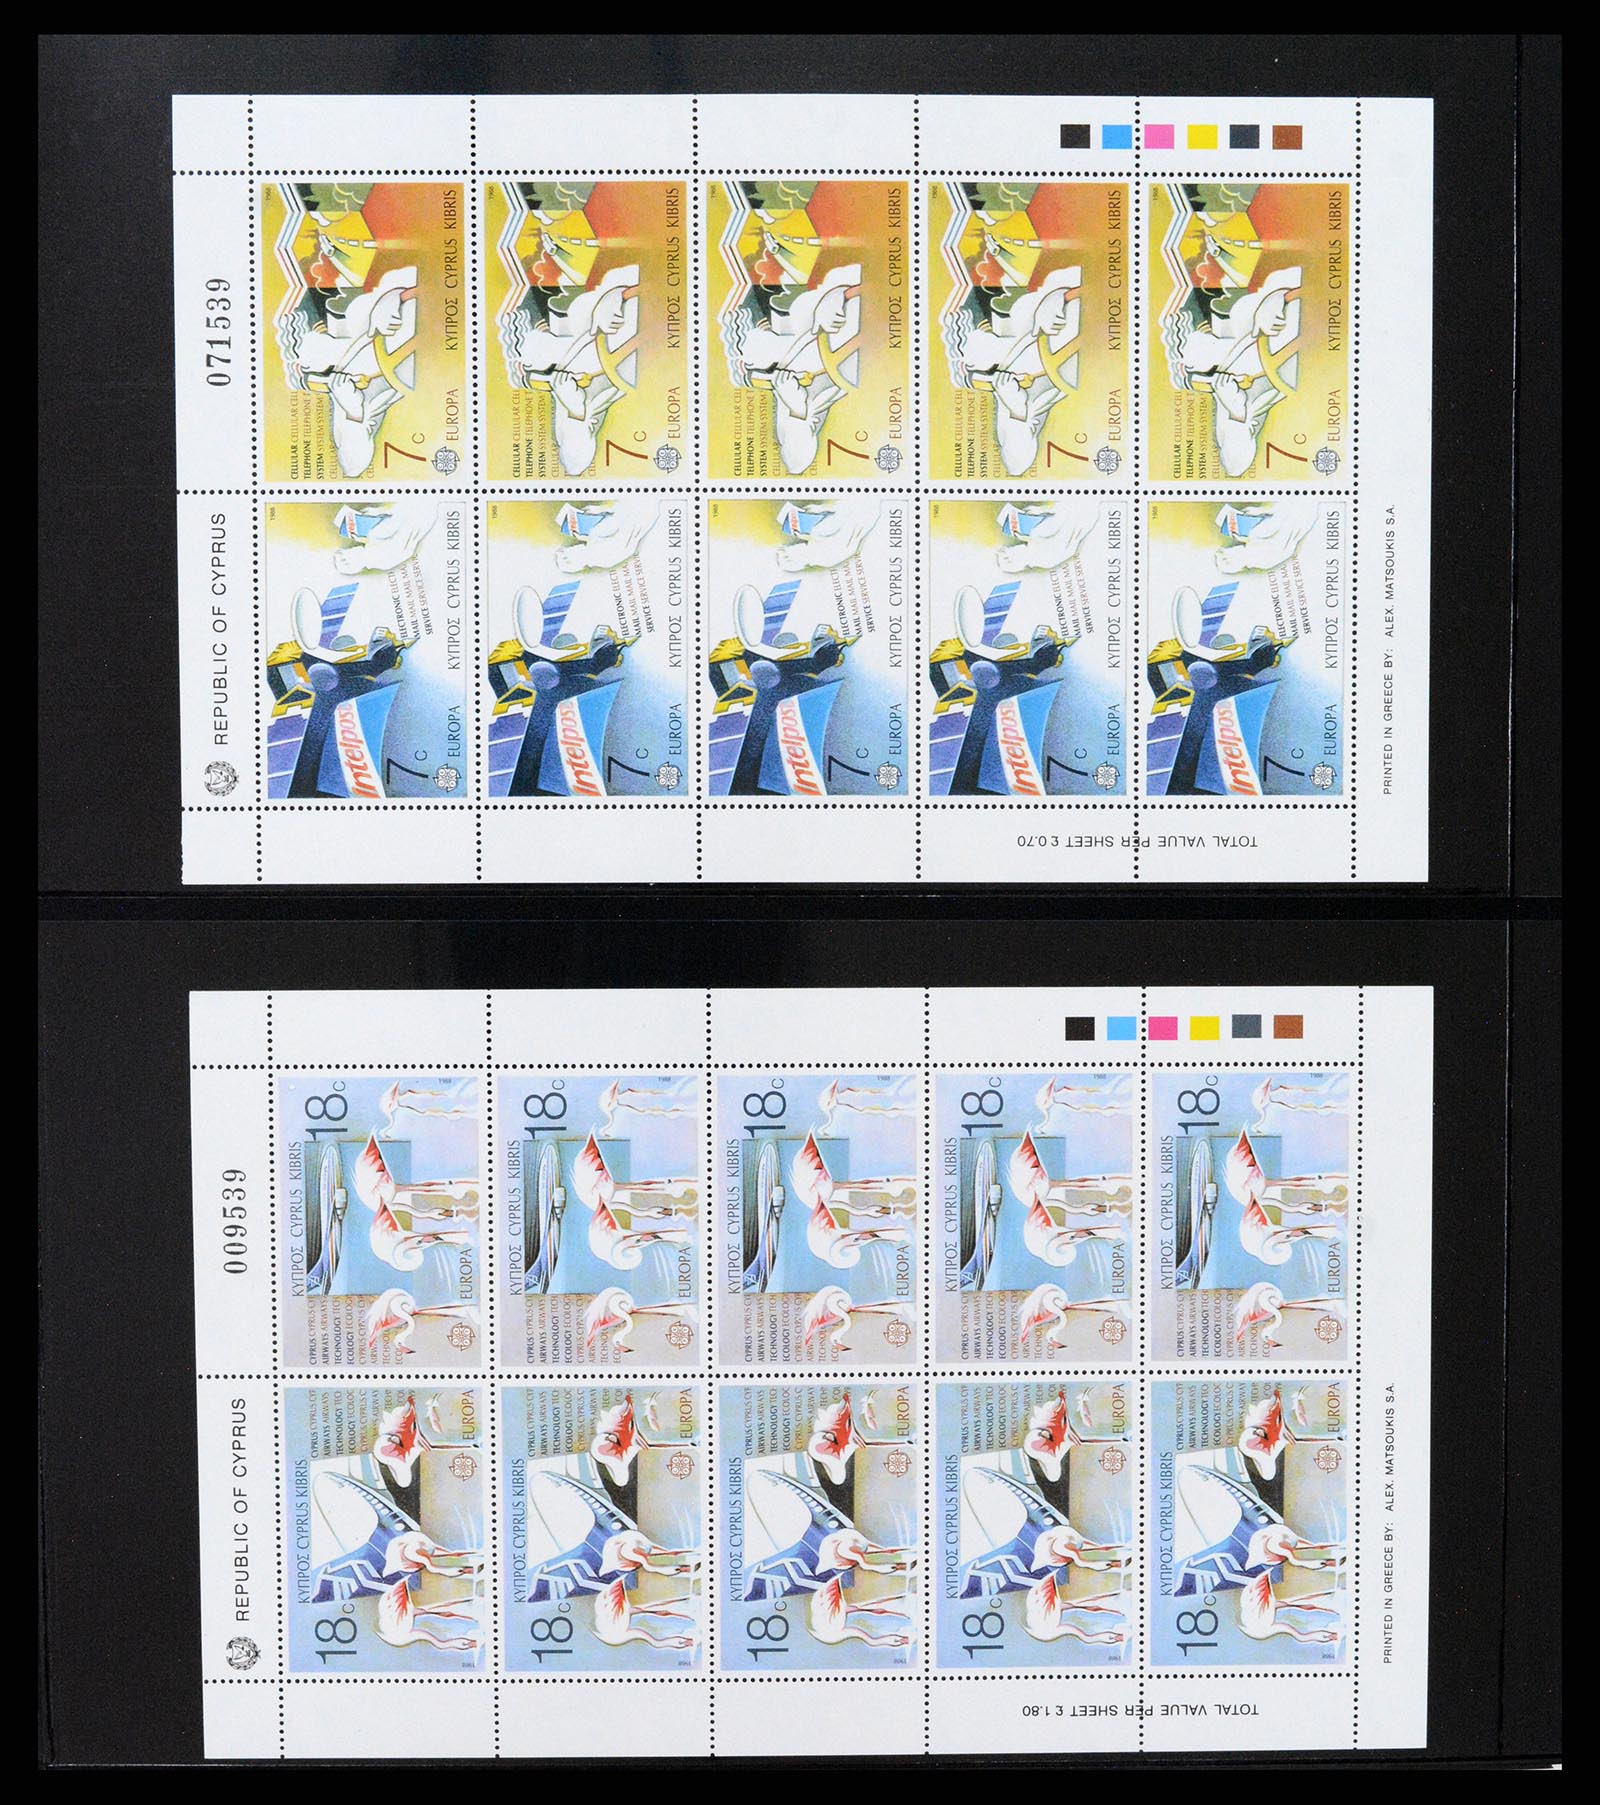 37345 025 - Stamp collection 37345 European countries souvenir sheets.